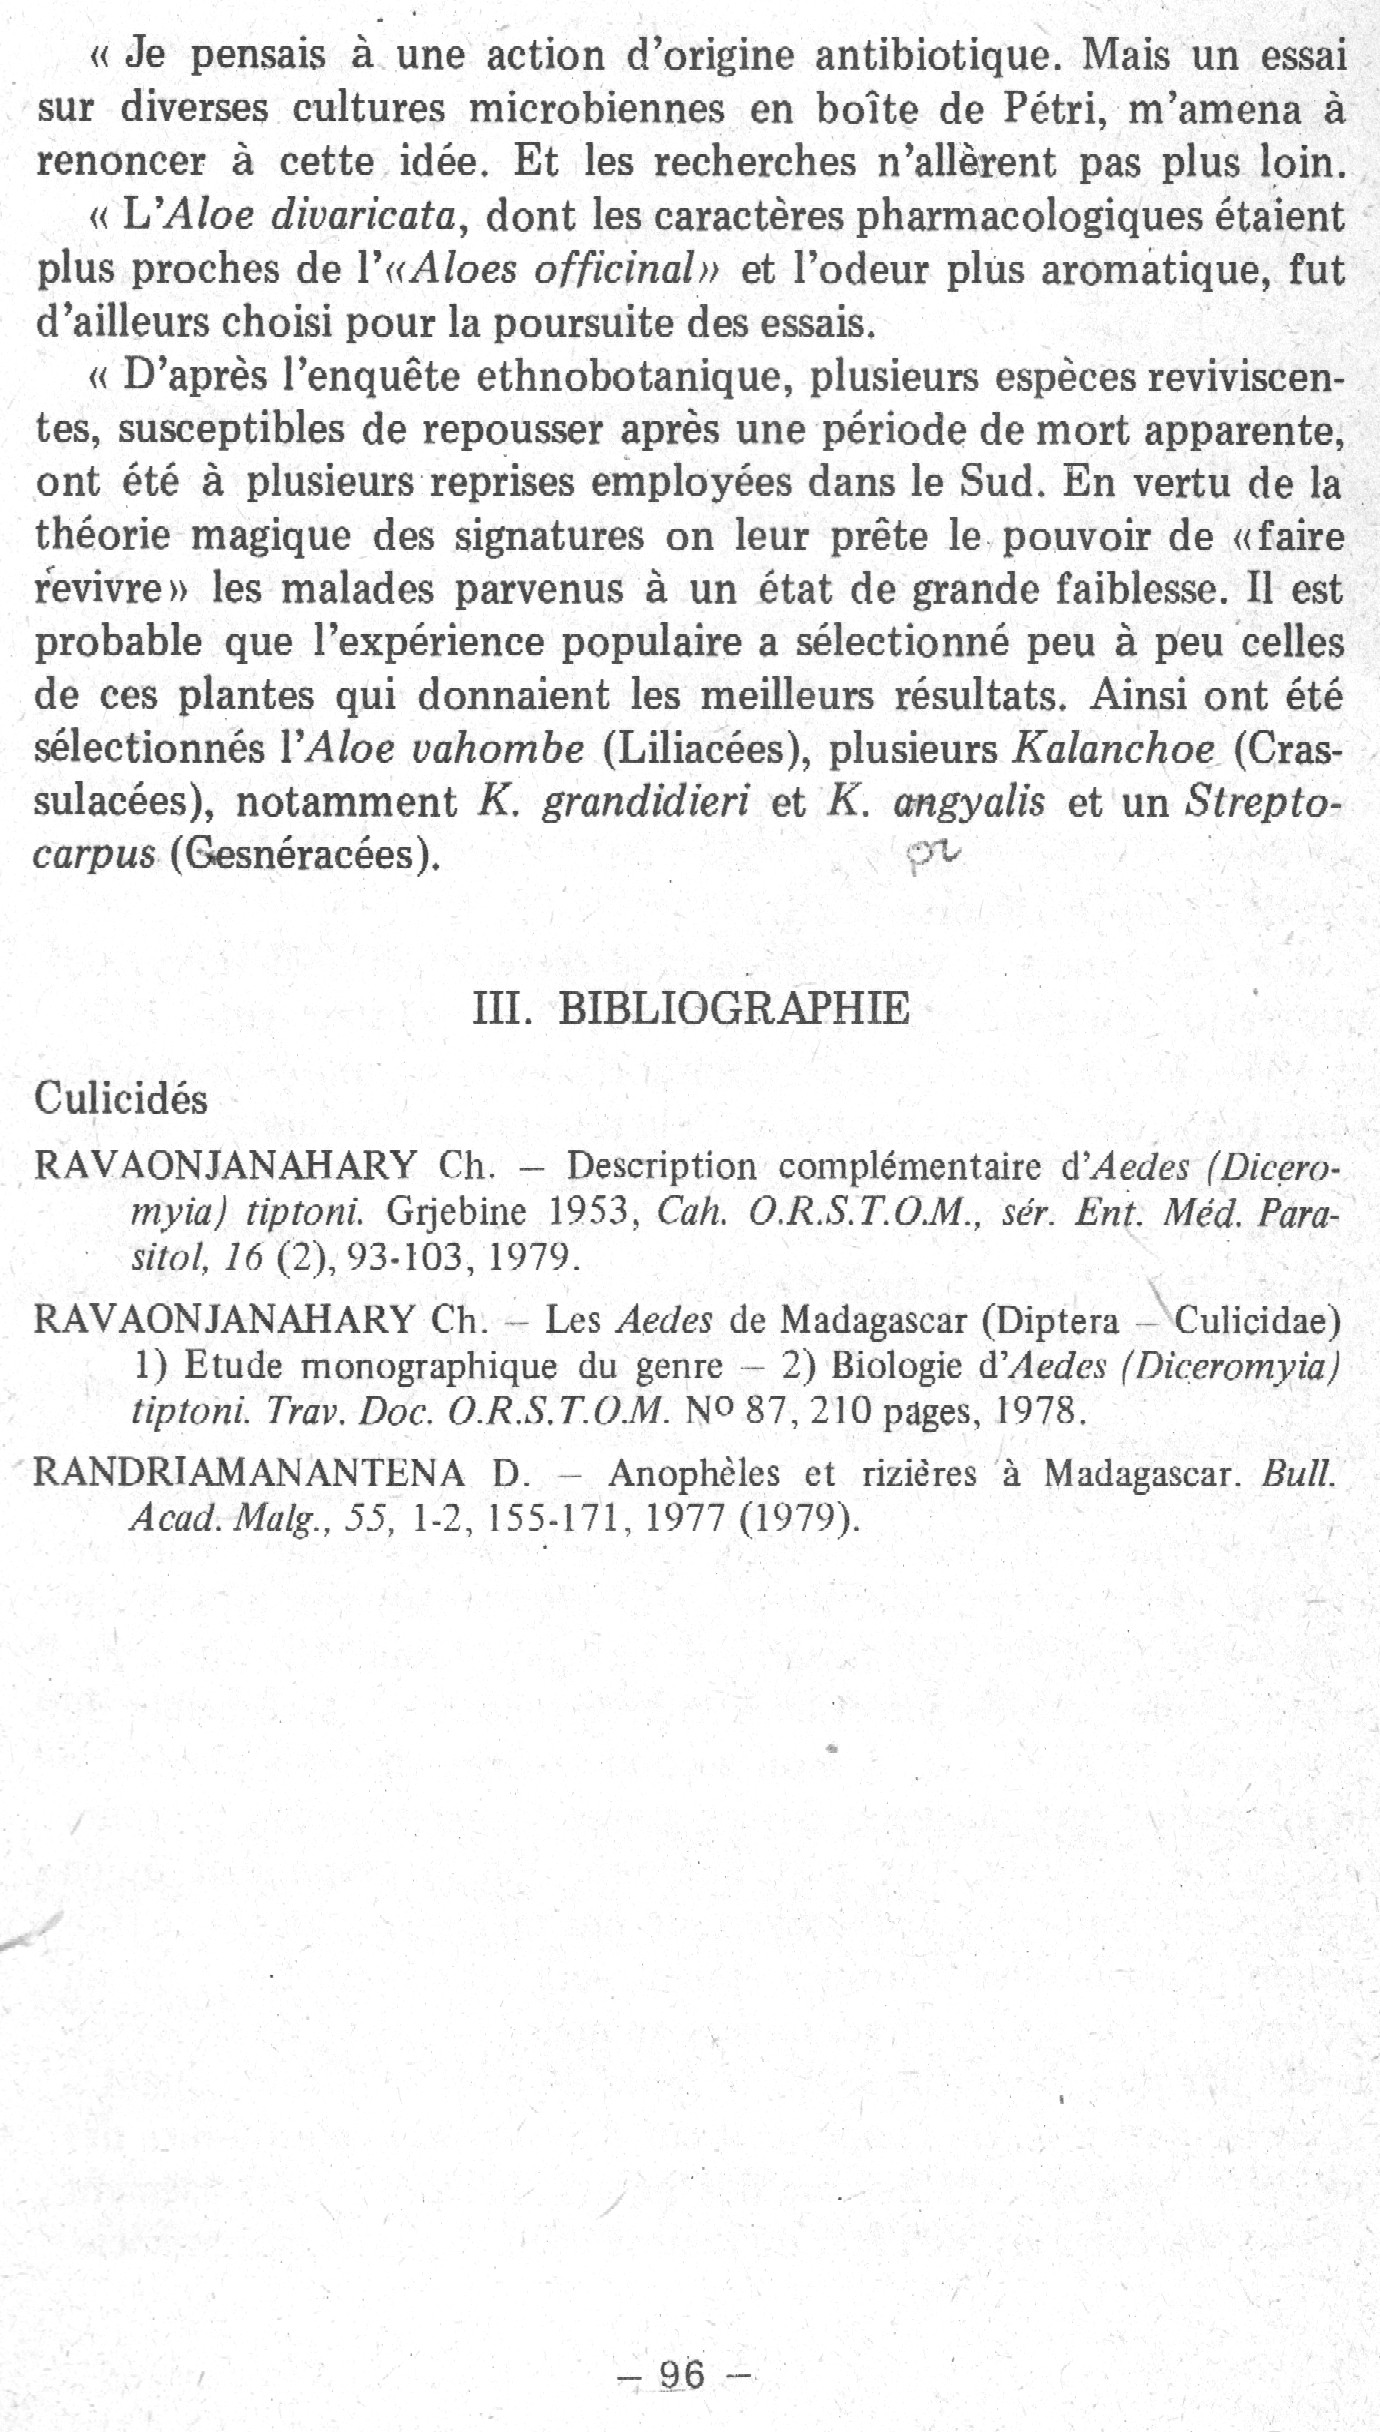 Rapport sur le fonctionnement de l'Institut Pasteur de Madagascar en 1979 page 96